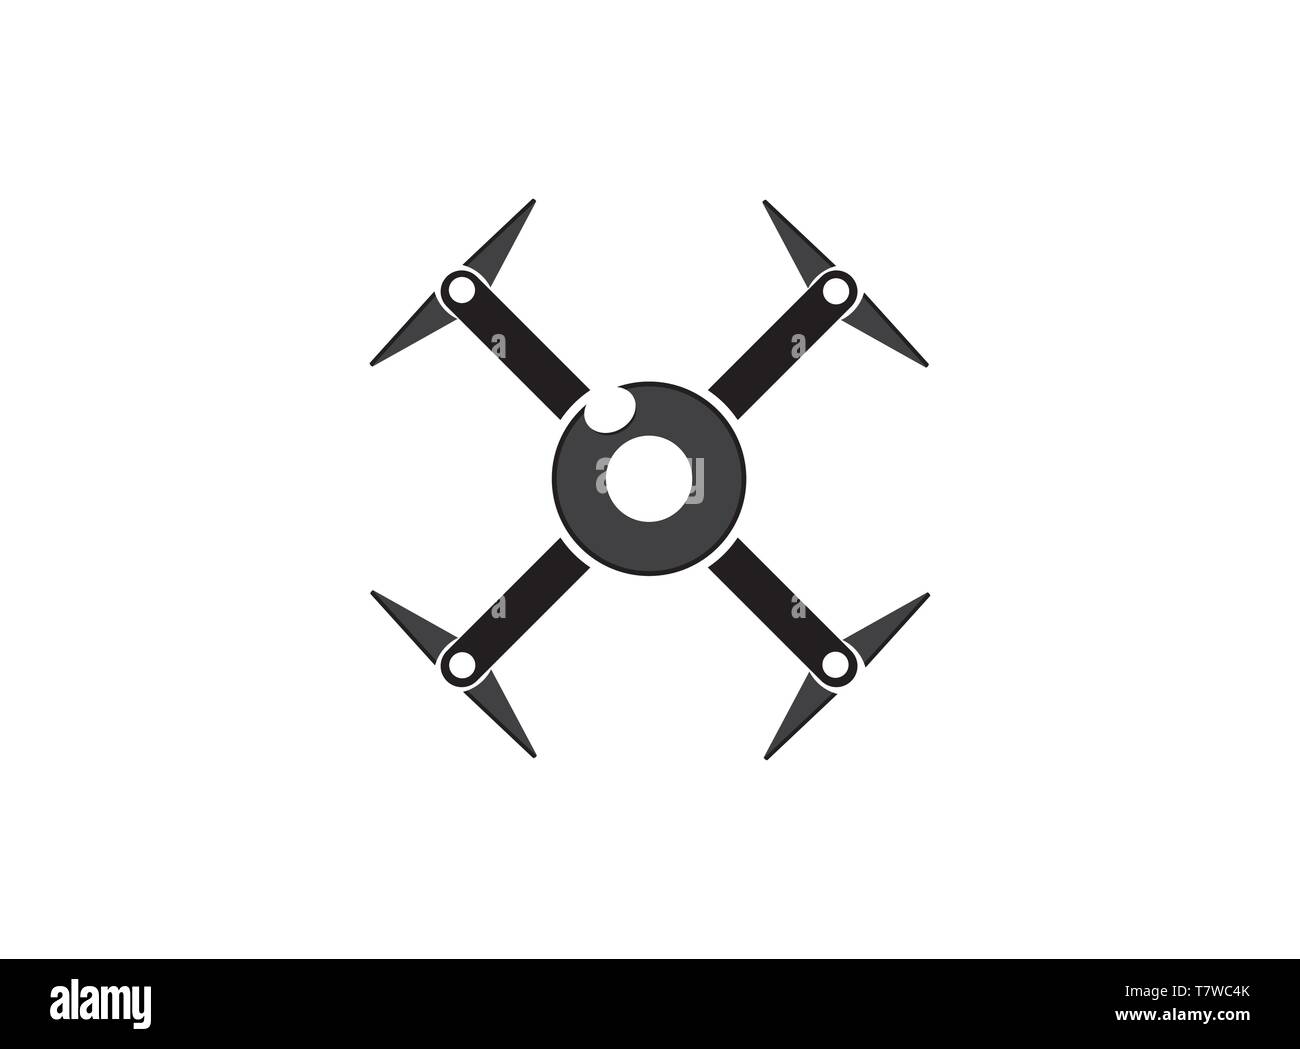 Drone quad copter avec appareil photo numérique au sky fly pour la surveillance. close-up de drones du rotor. 4 hélice blade drone drone Camer Vidéo silhouette. Illustration de Vecteur